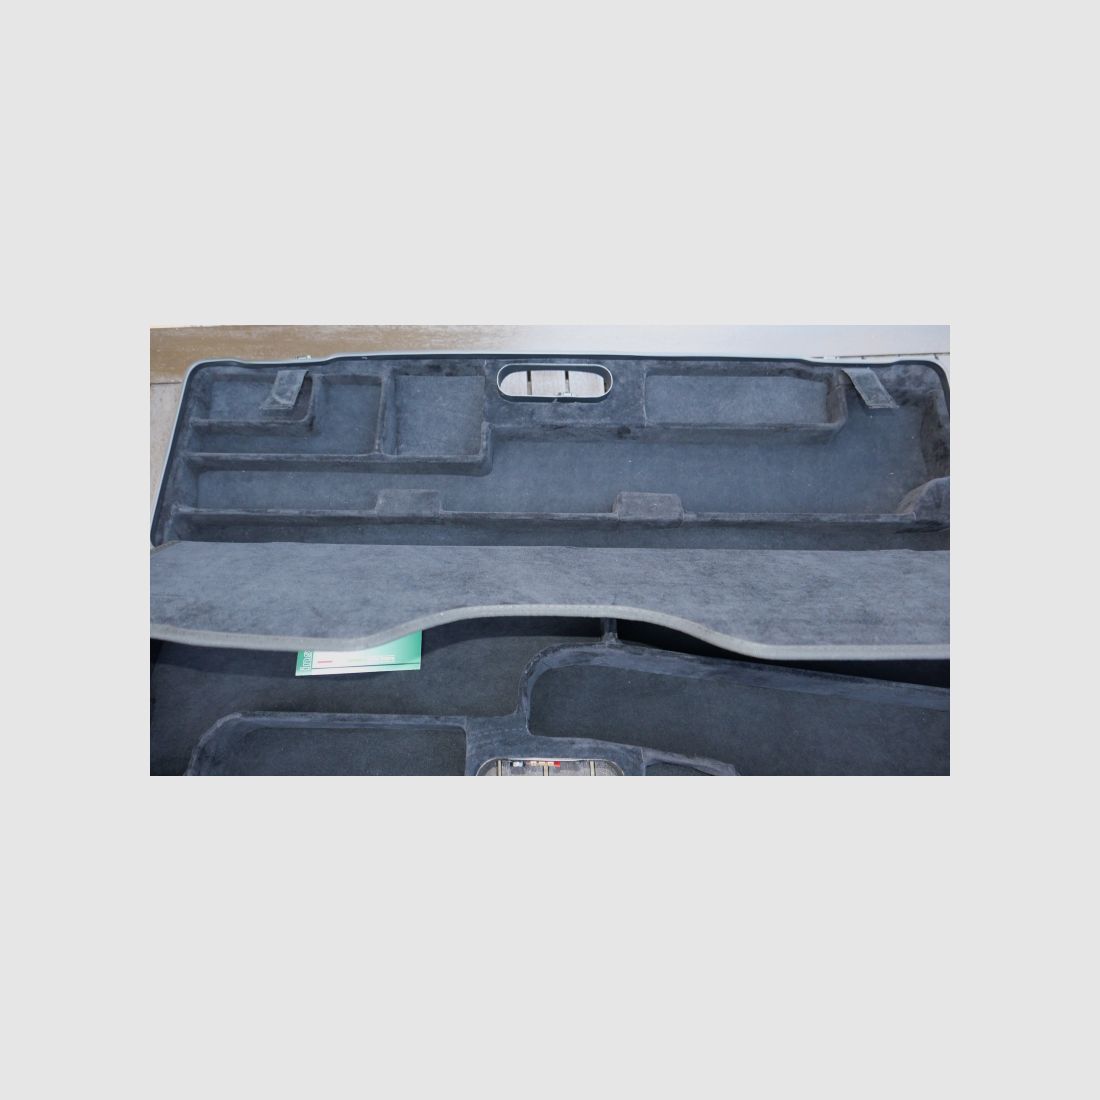 Sauer 404 Compact Koffer doppeltes Fach für ATL, NEU, von TEAM-CEMA.DE